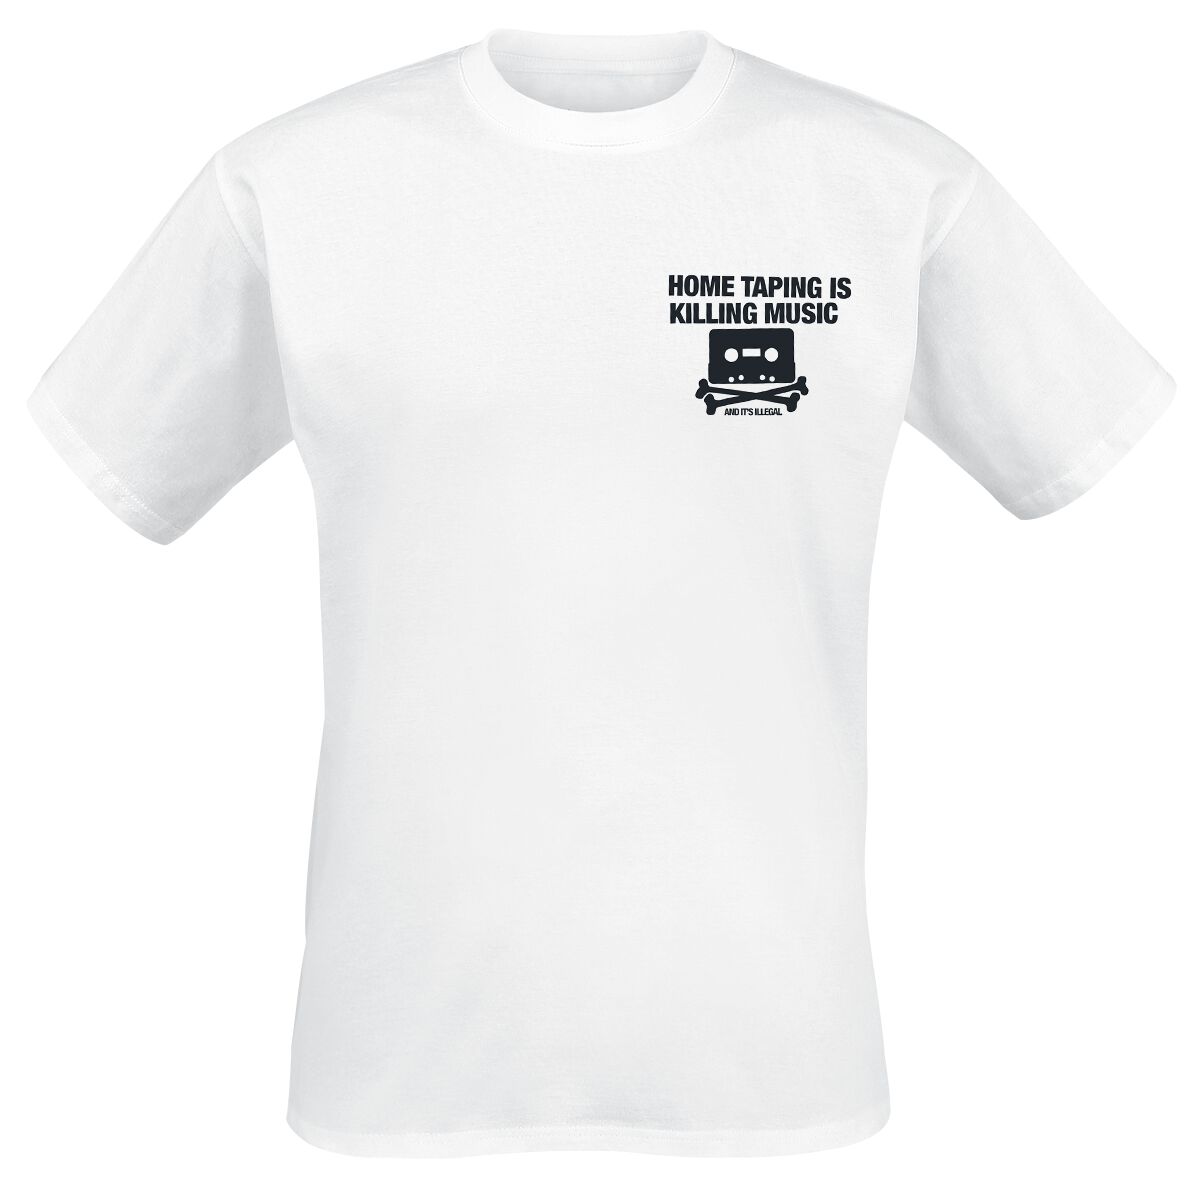 Parental Advisory T-Shirt - Home Taping - S bis XXL - für Männer - Größe M - weiß  - Lizenziertes Merchandise!